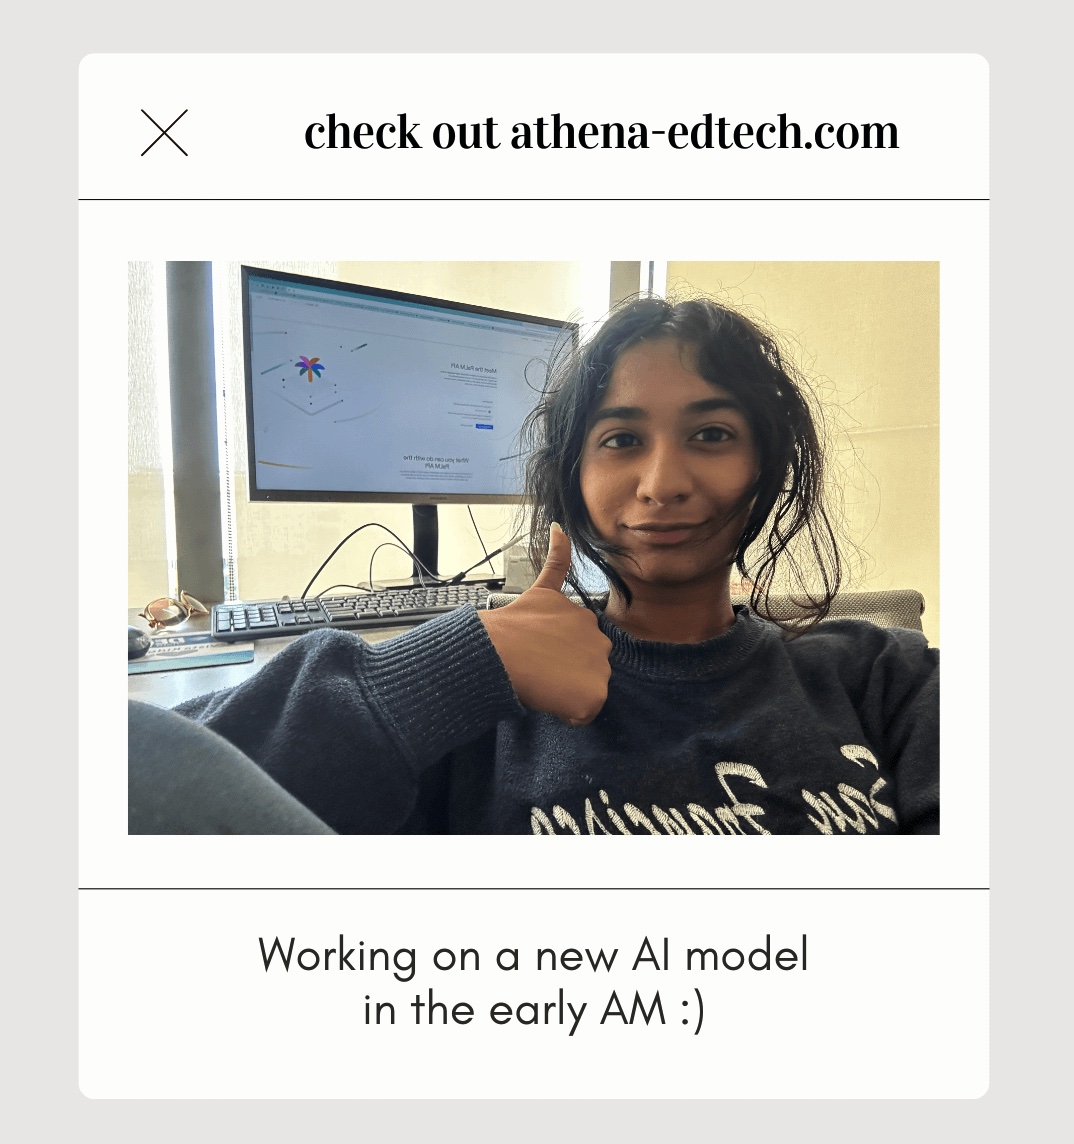 Athena founder working on AI